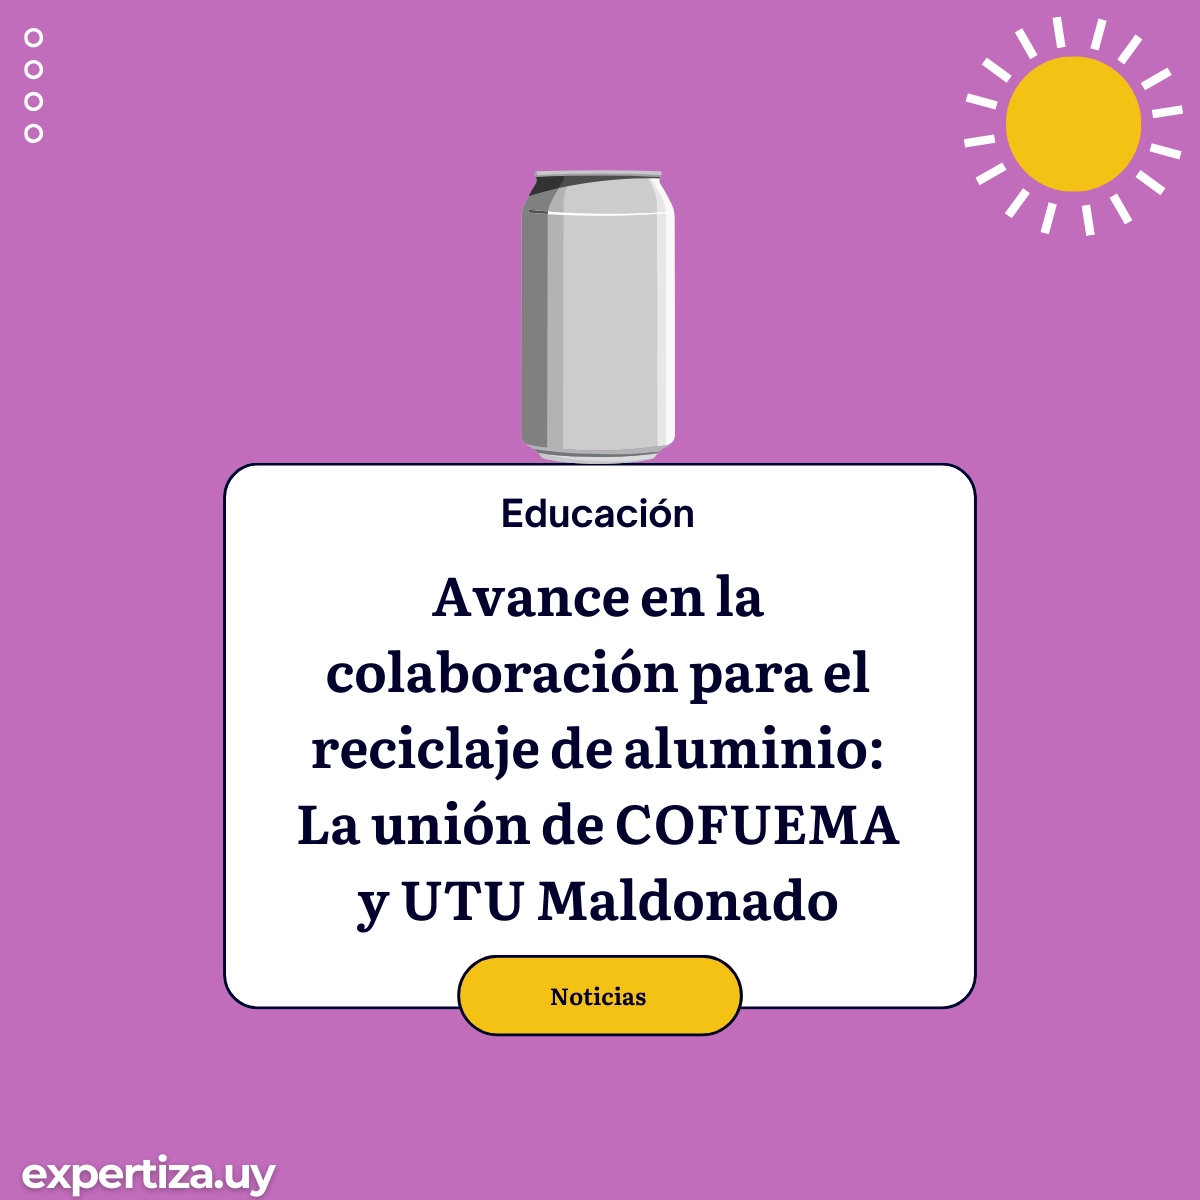 Avance en la colaboración para el reciclaje de aluminio: La unión de COFUEMA y UTU Maldonado.